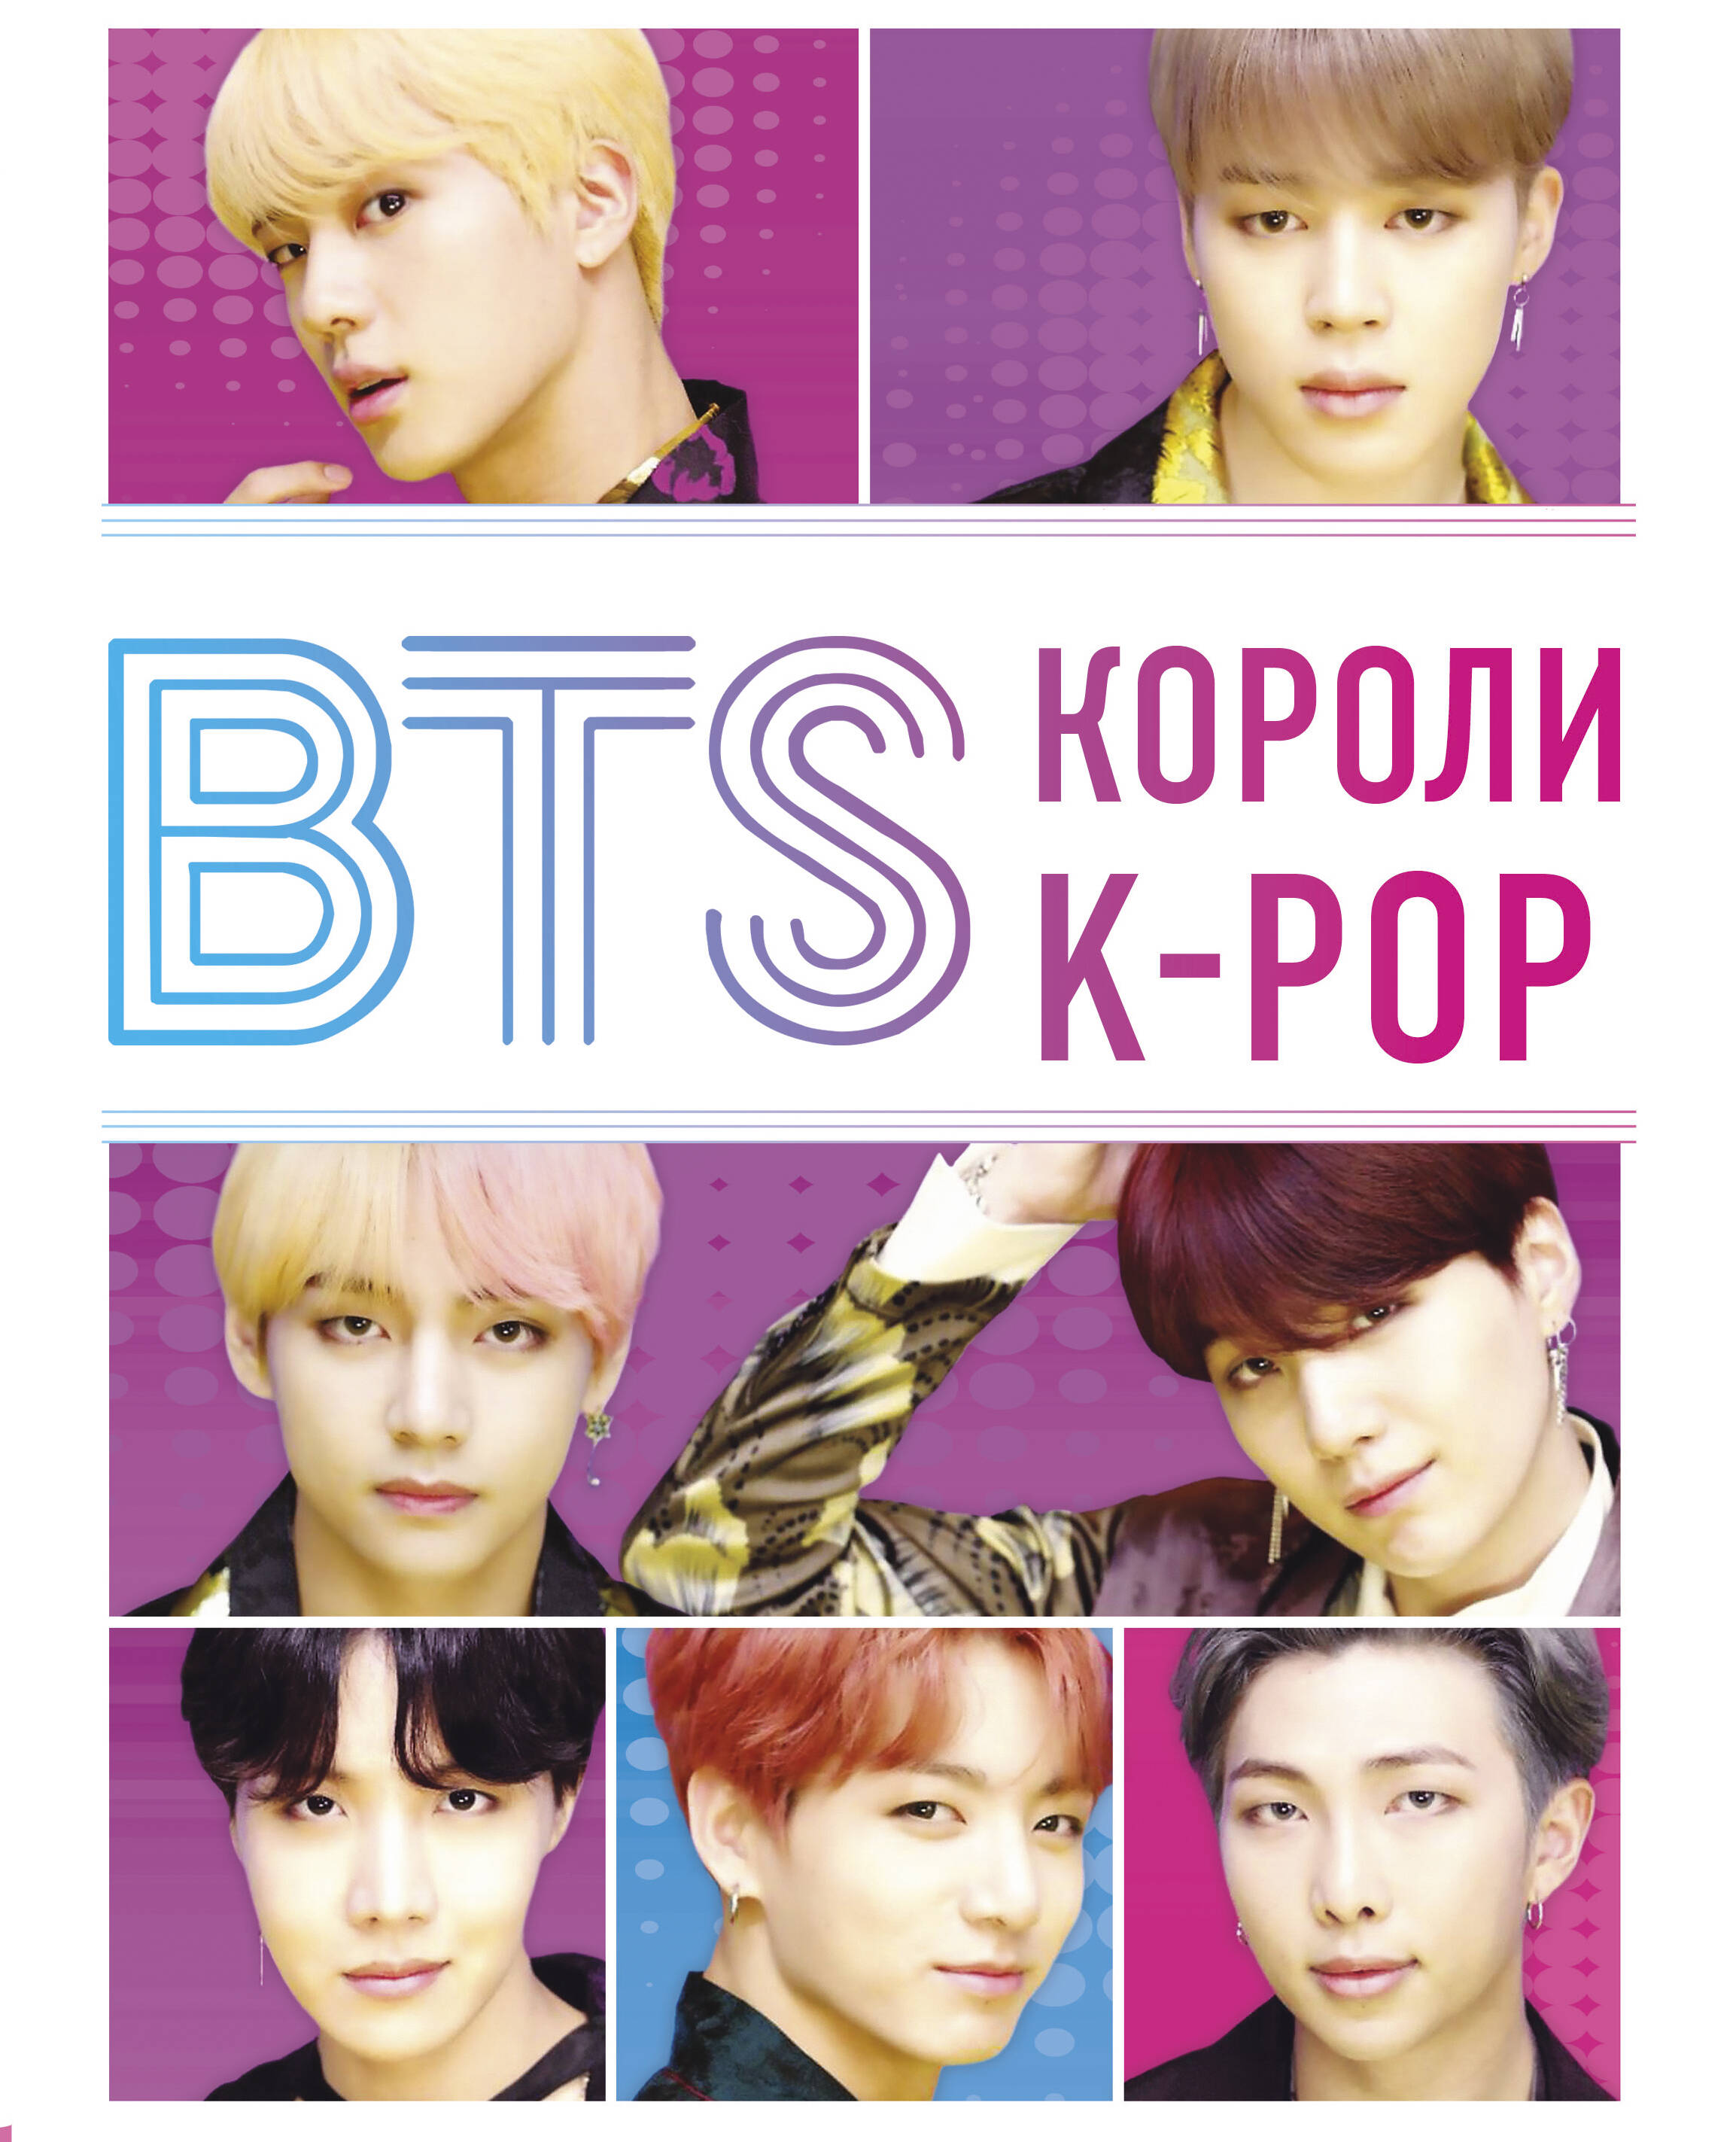 BTS  K-POP